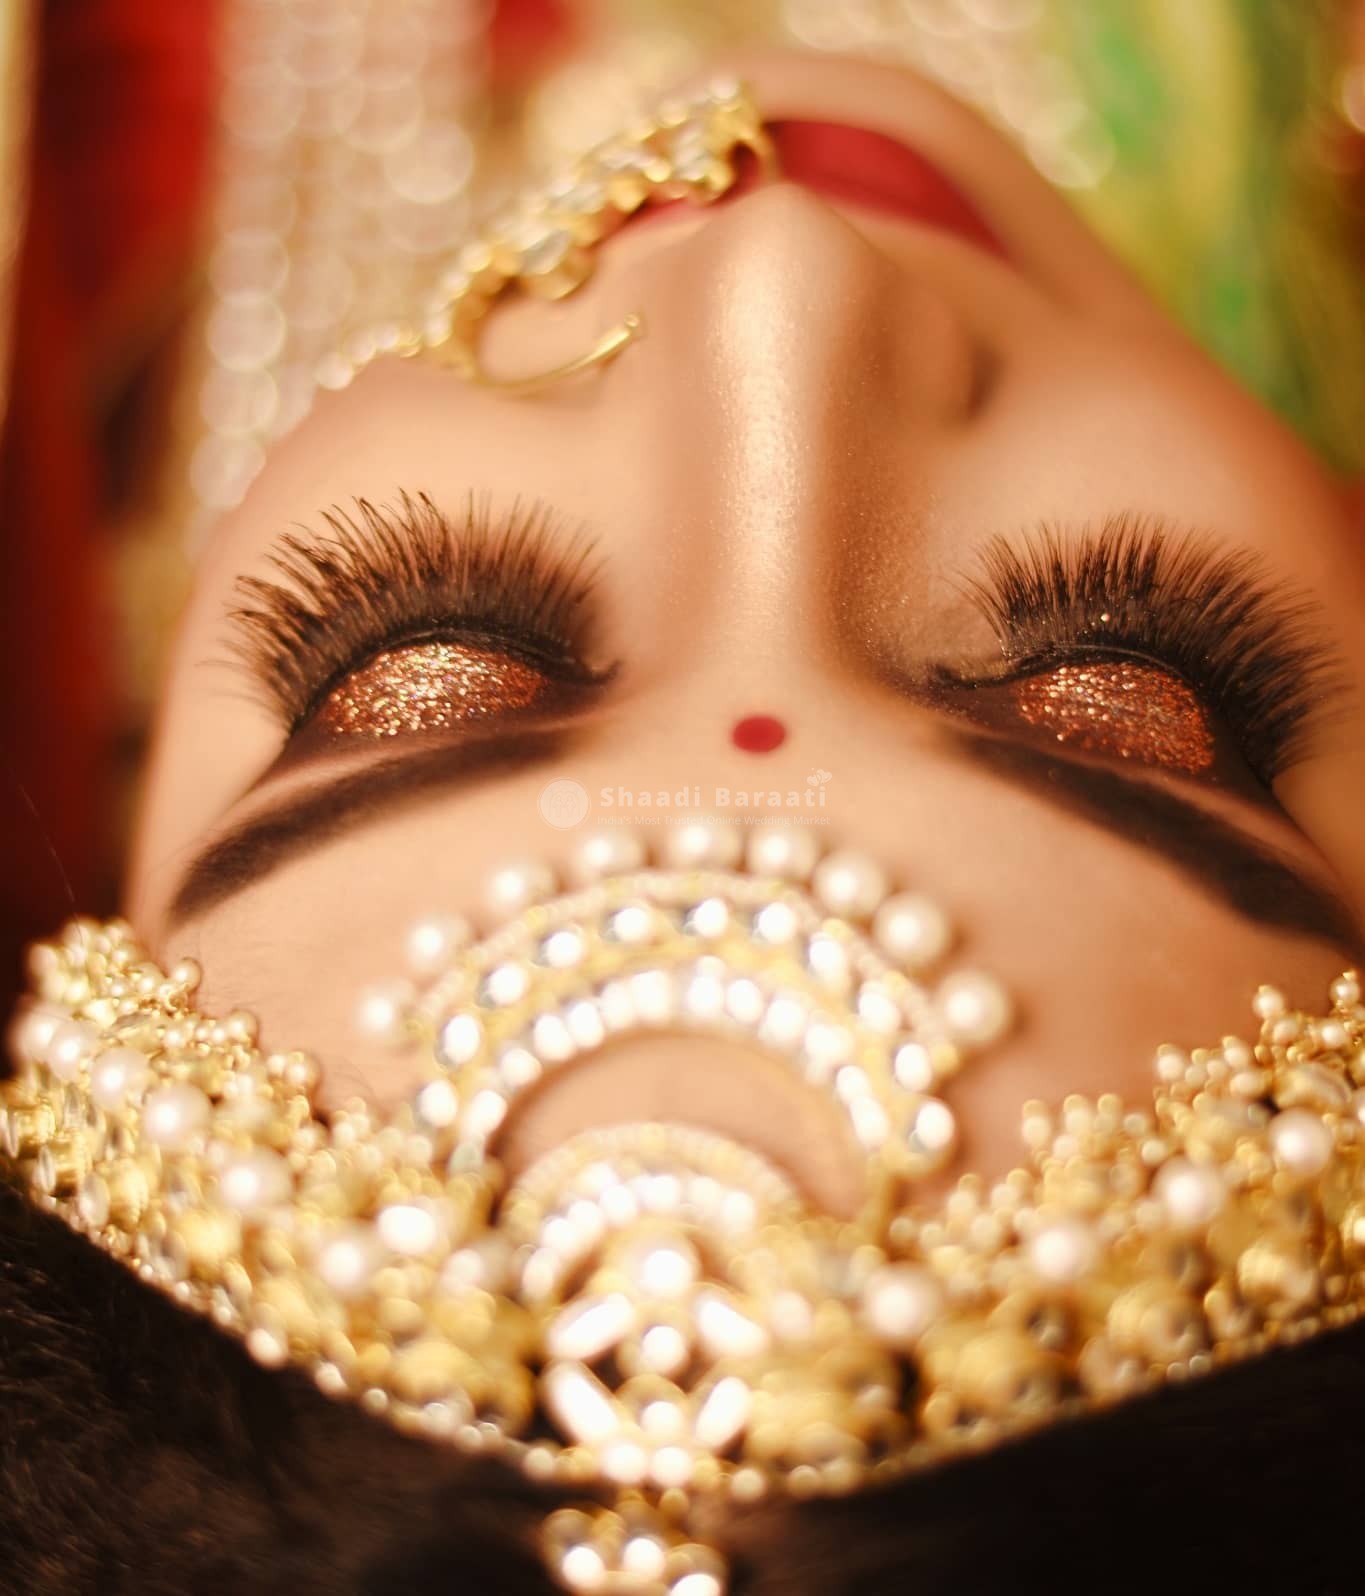 Indian bridal makeup and jewellery #photoshoot | Bridal makeup looks,  Simple bridal makeup, Indian bridal makeup